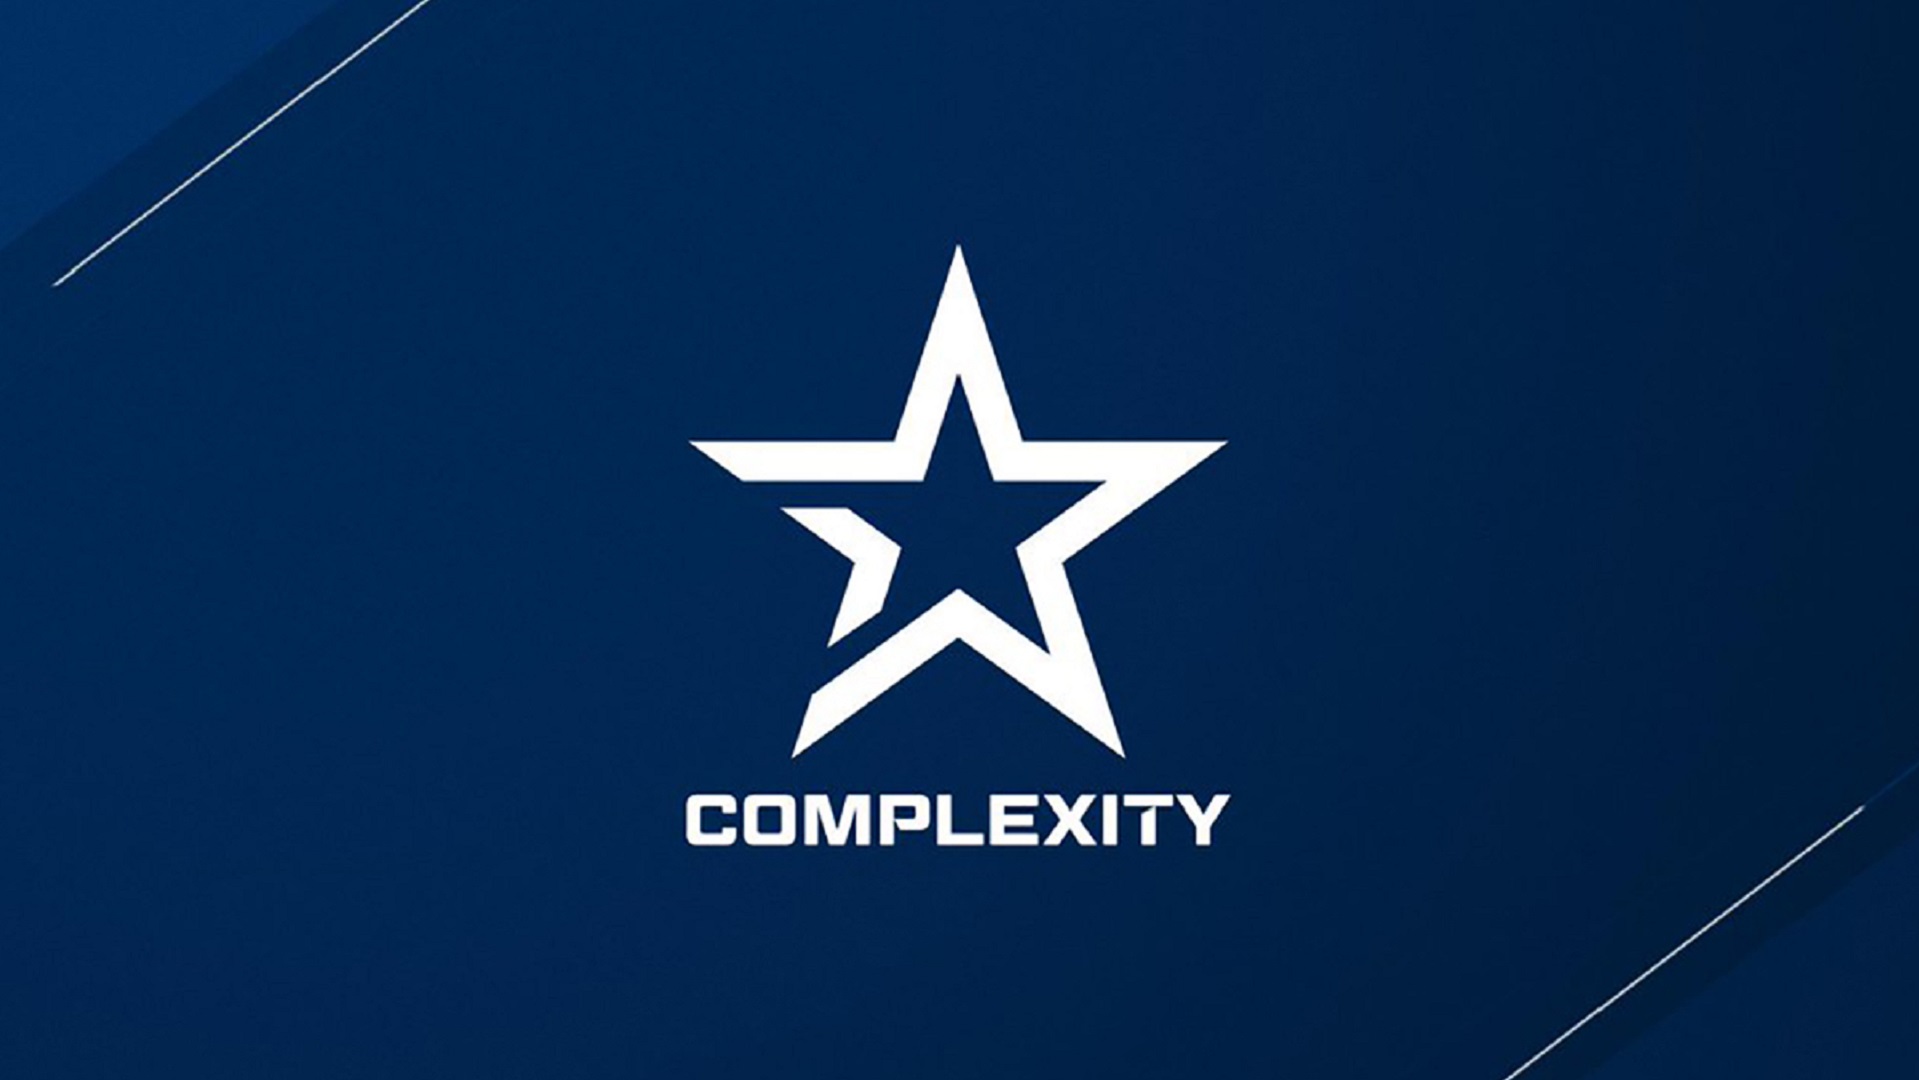 Complexity cs. Команда КС го complexity. Логотип complexity. Complexity Gaming. Complexity logo 2021.